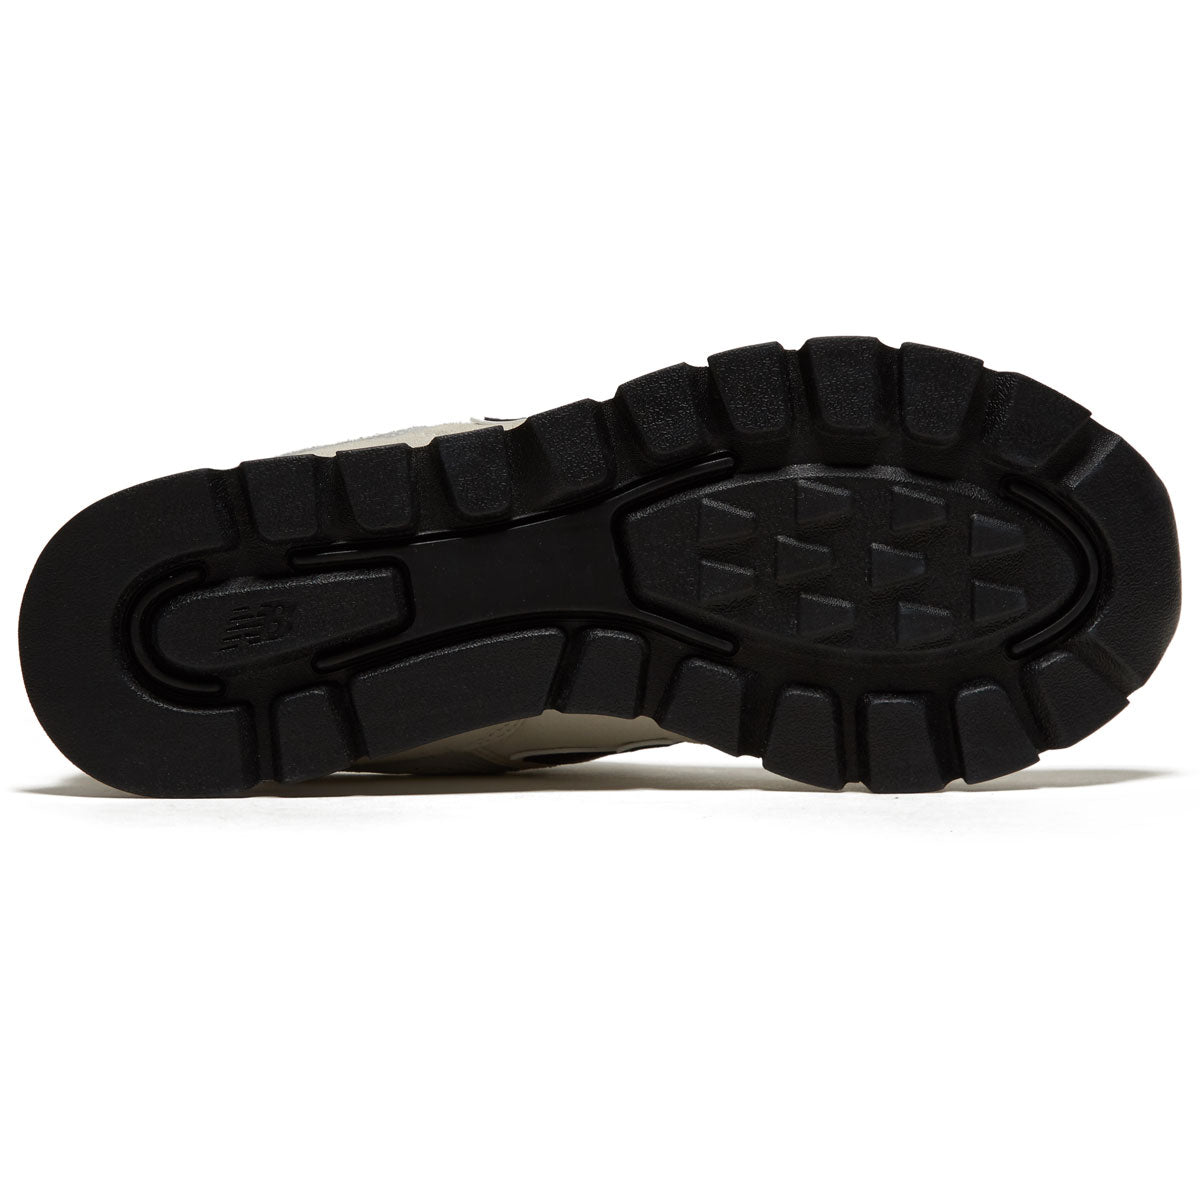 New Balance 574 Rugged Shoes - White/Black image 4